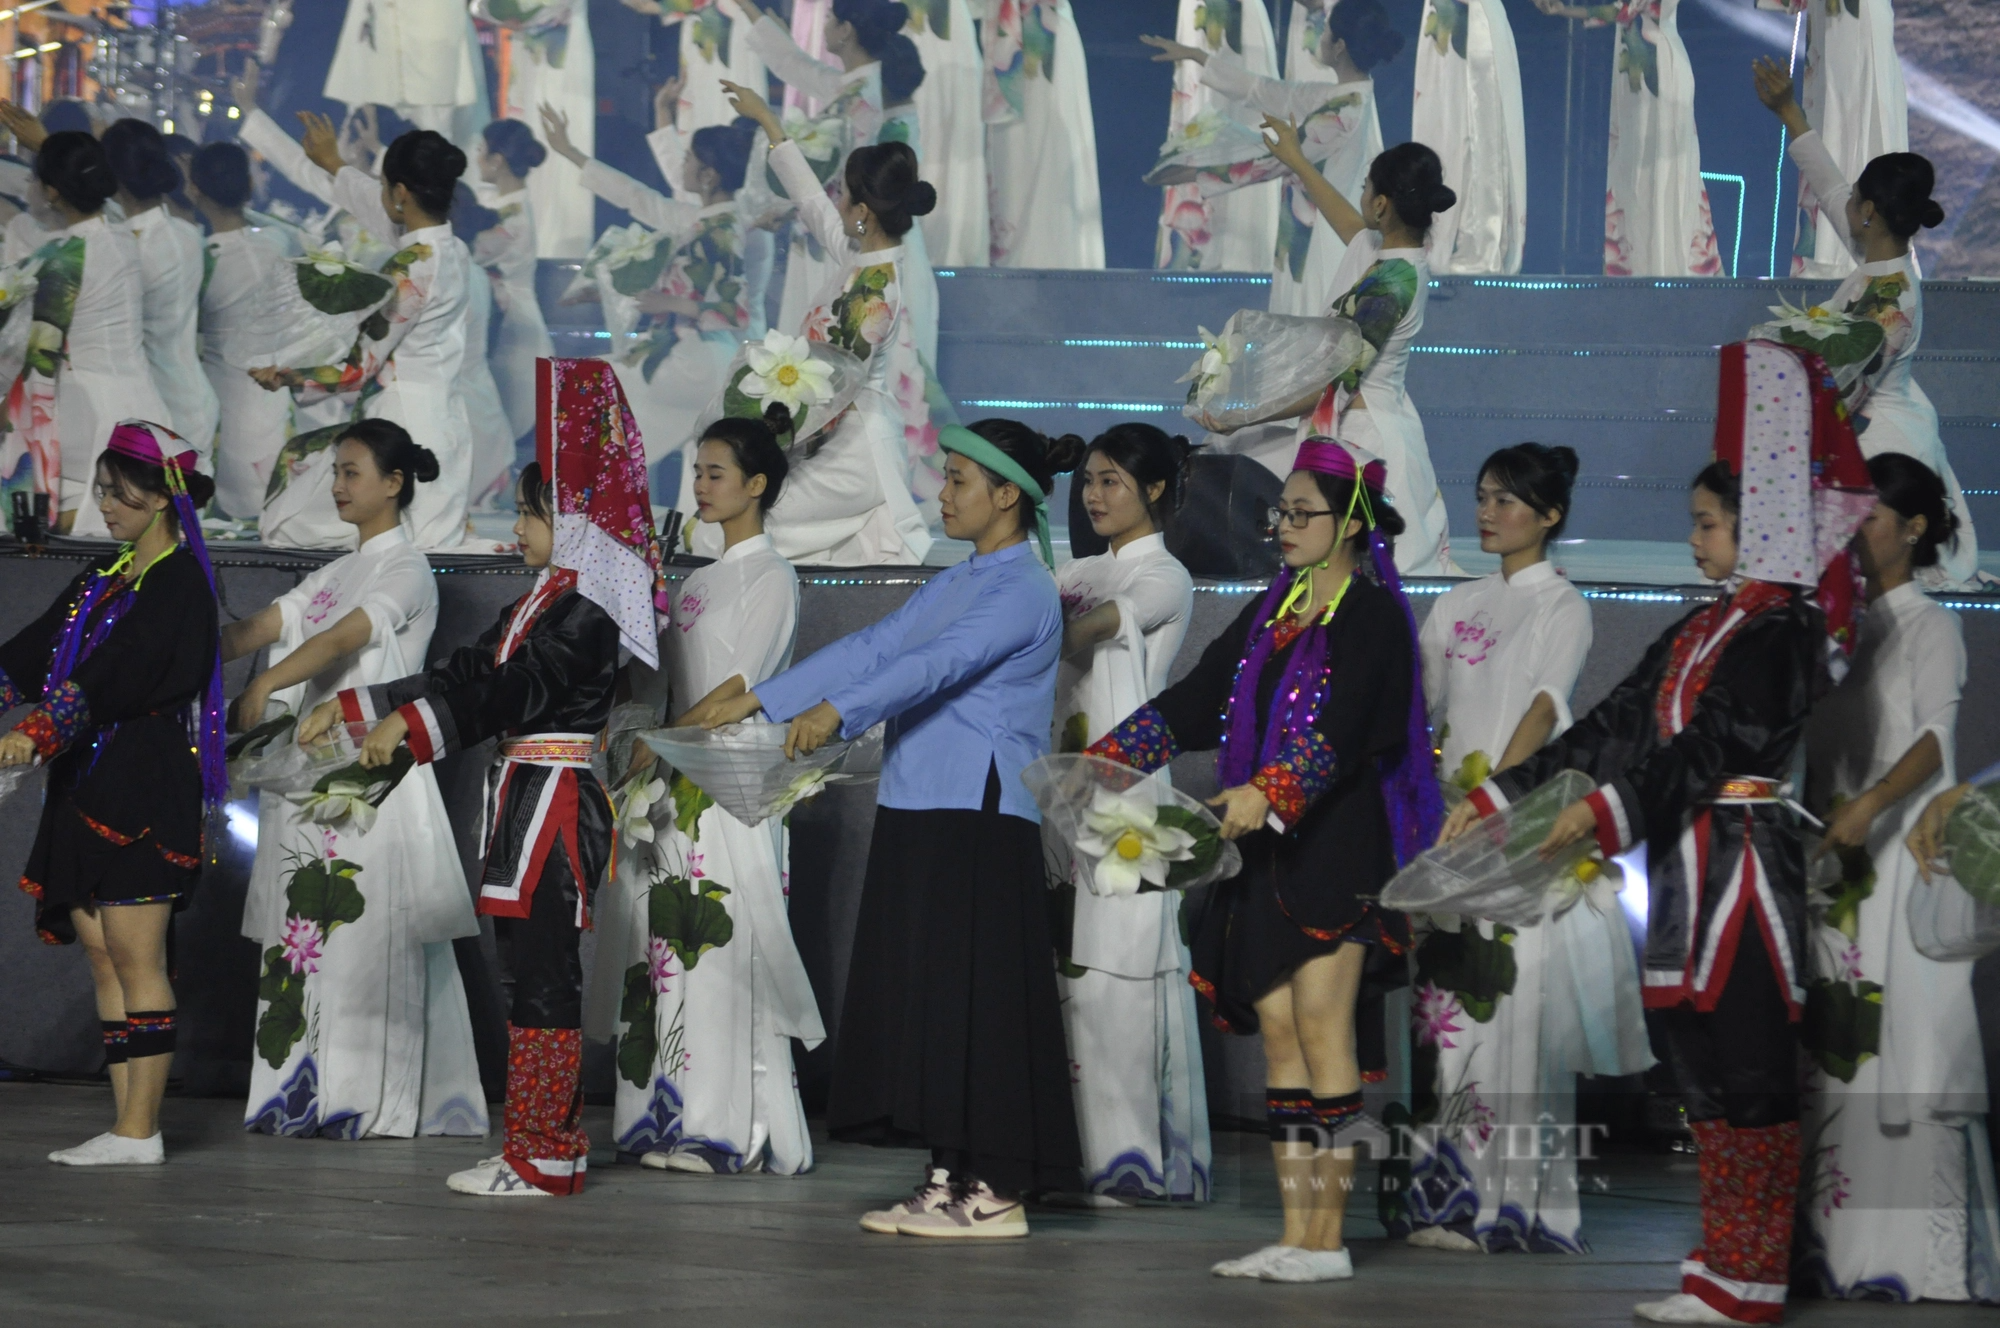 Mãn nhãn Lễ hội Hokkaido lần đầu tiên được tổ chức tại Việt Nam - Ảnh 3.